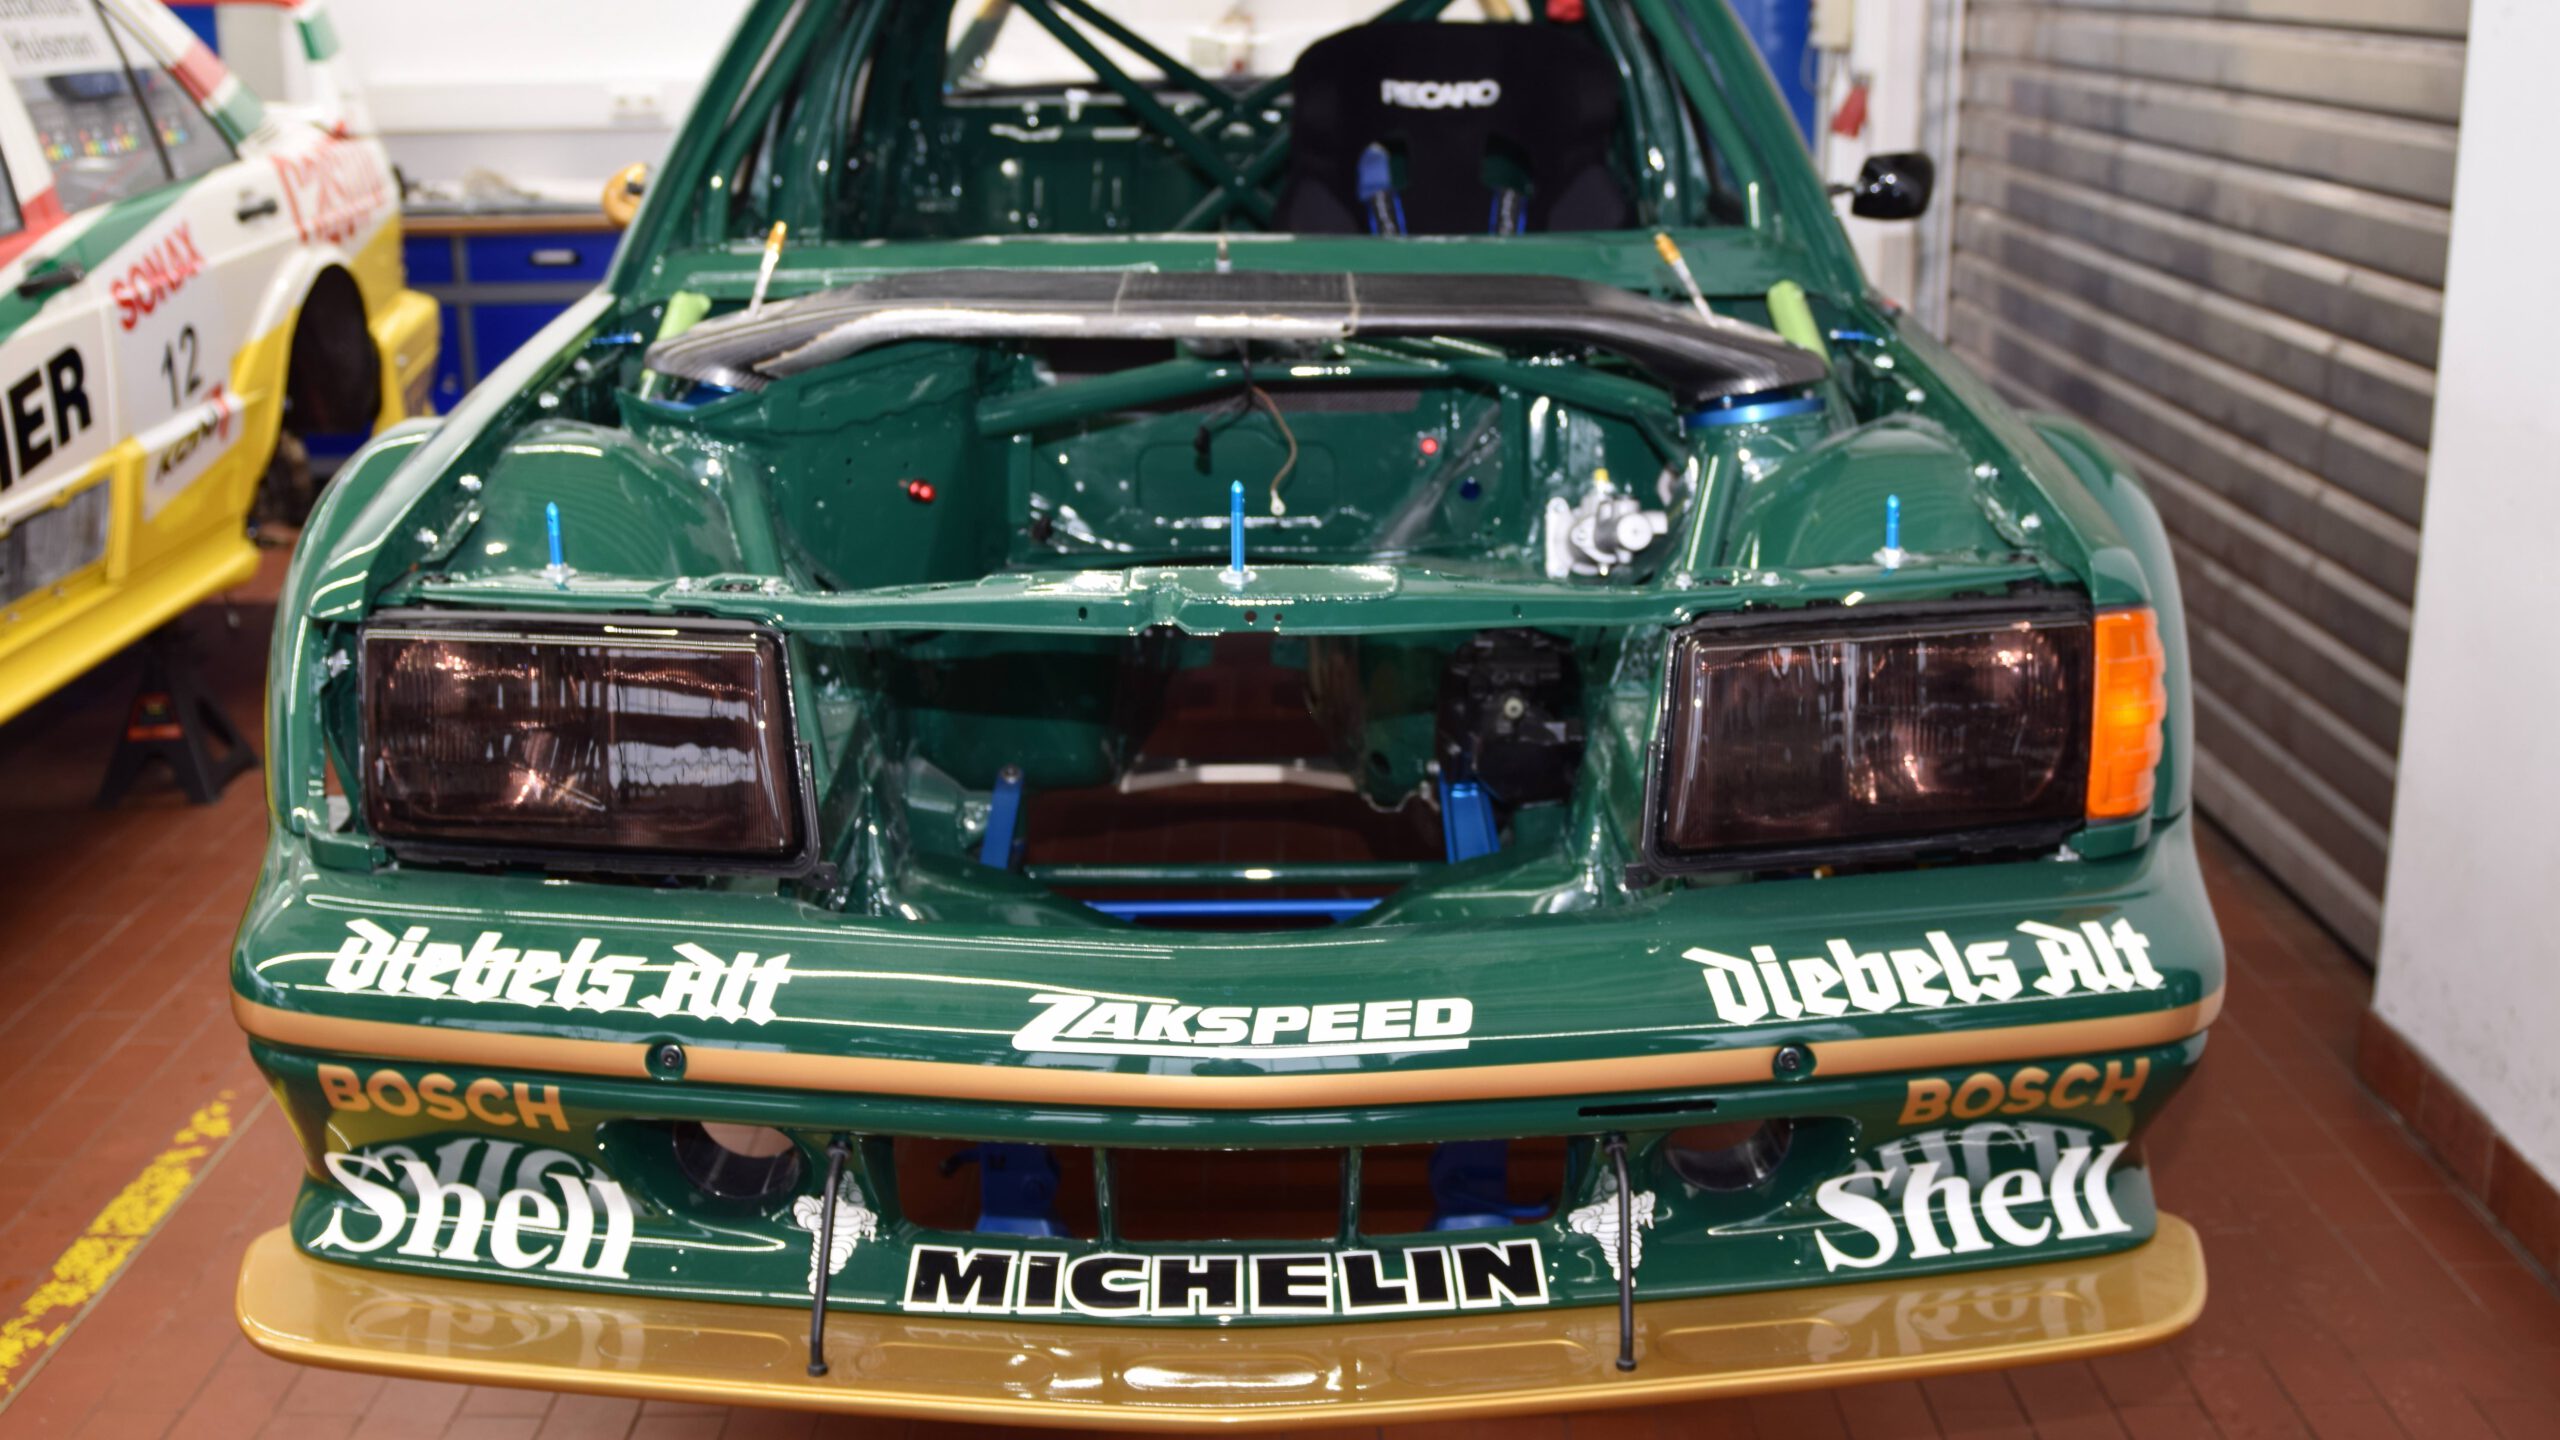 DTM-1992-Deutsche-Tourenwagen-Meisterschaft-Kurt-Thiim-Zakspeed-Mercedes-Benz-190E-2.5-16-tst-sport-und-technik-Rennwagen-Manufaktur-0002